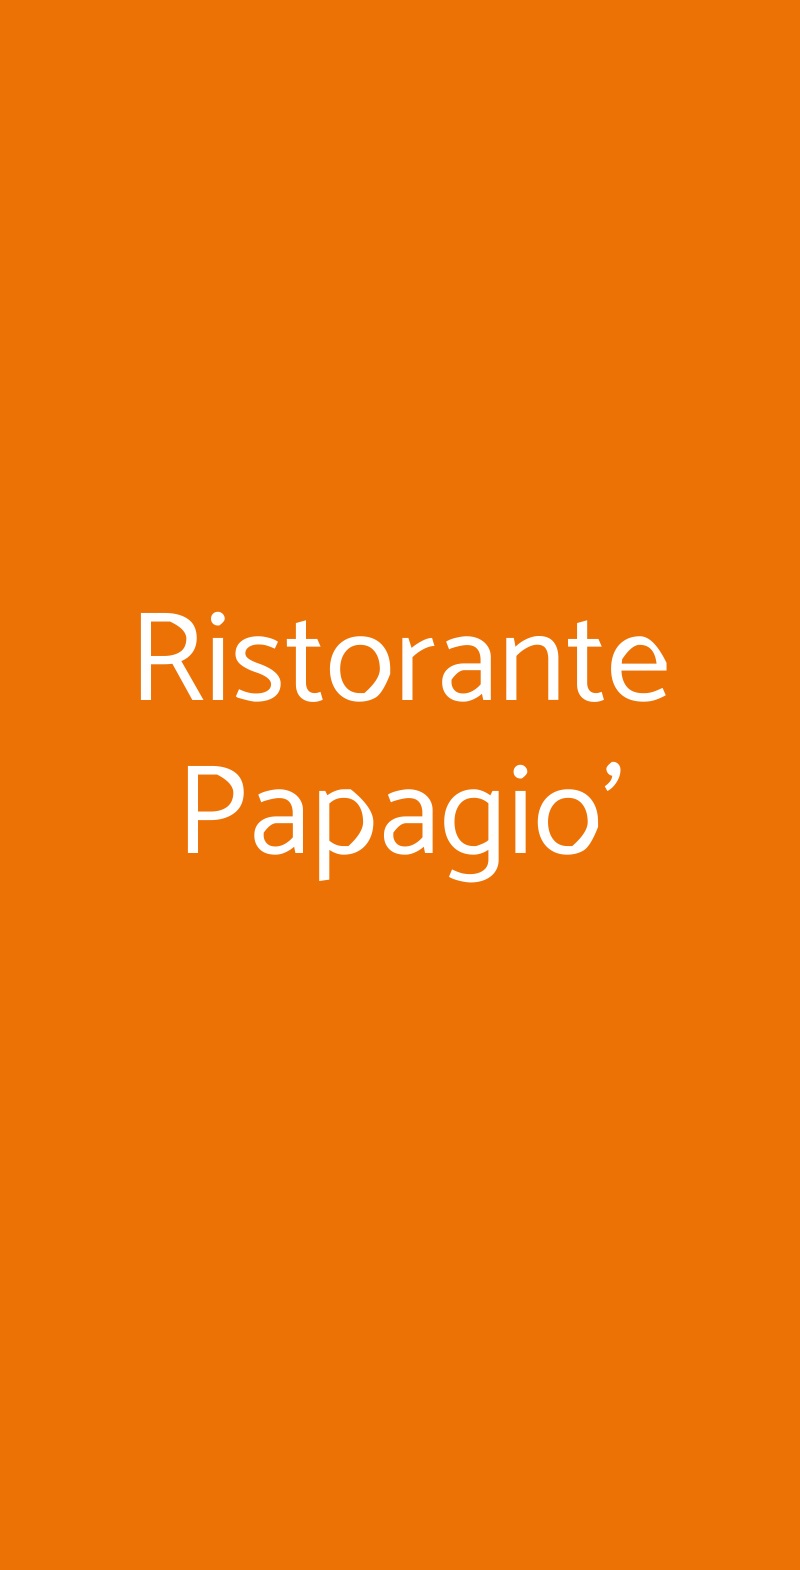 Ristorante Papagio' Roma menù 1 pagina